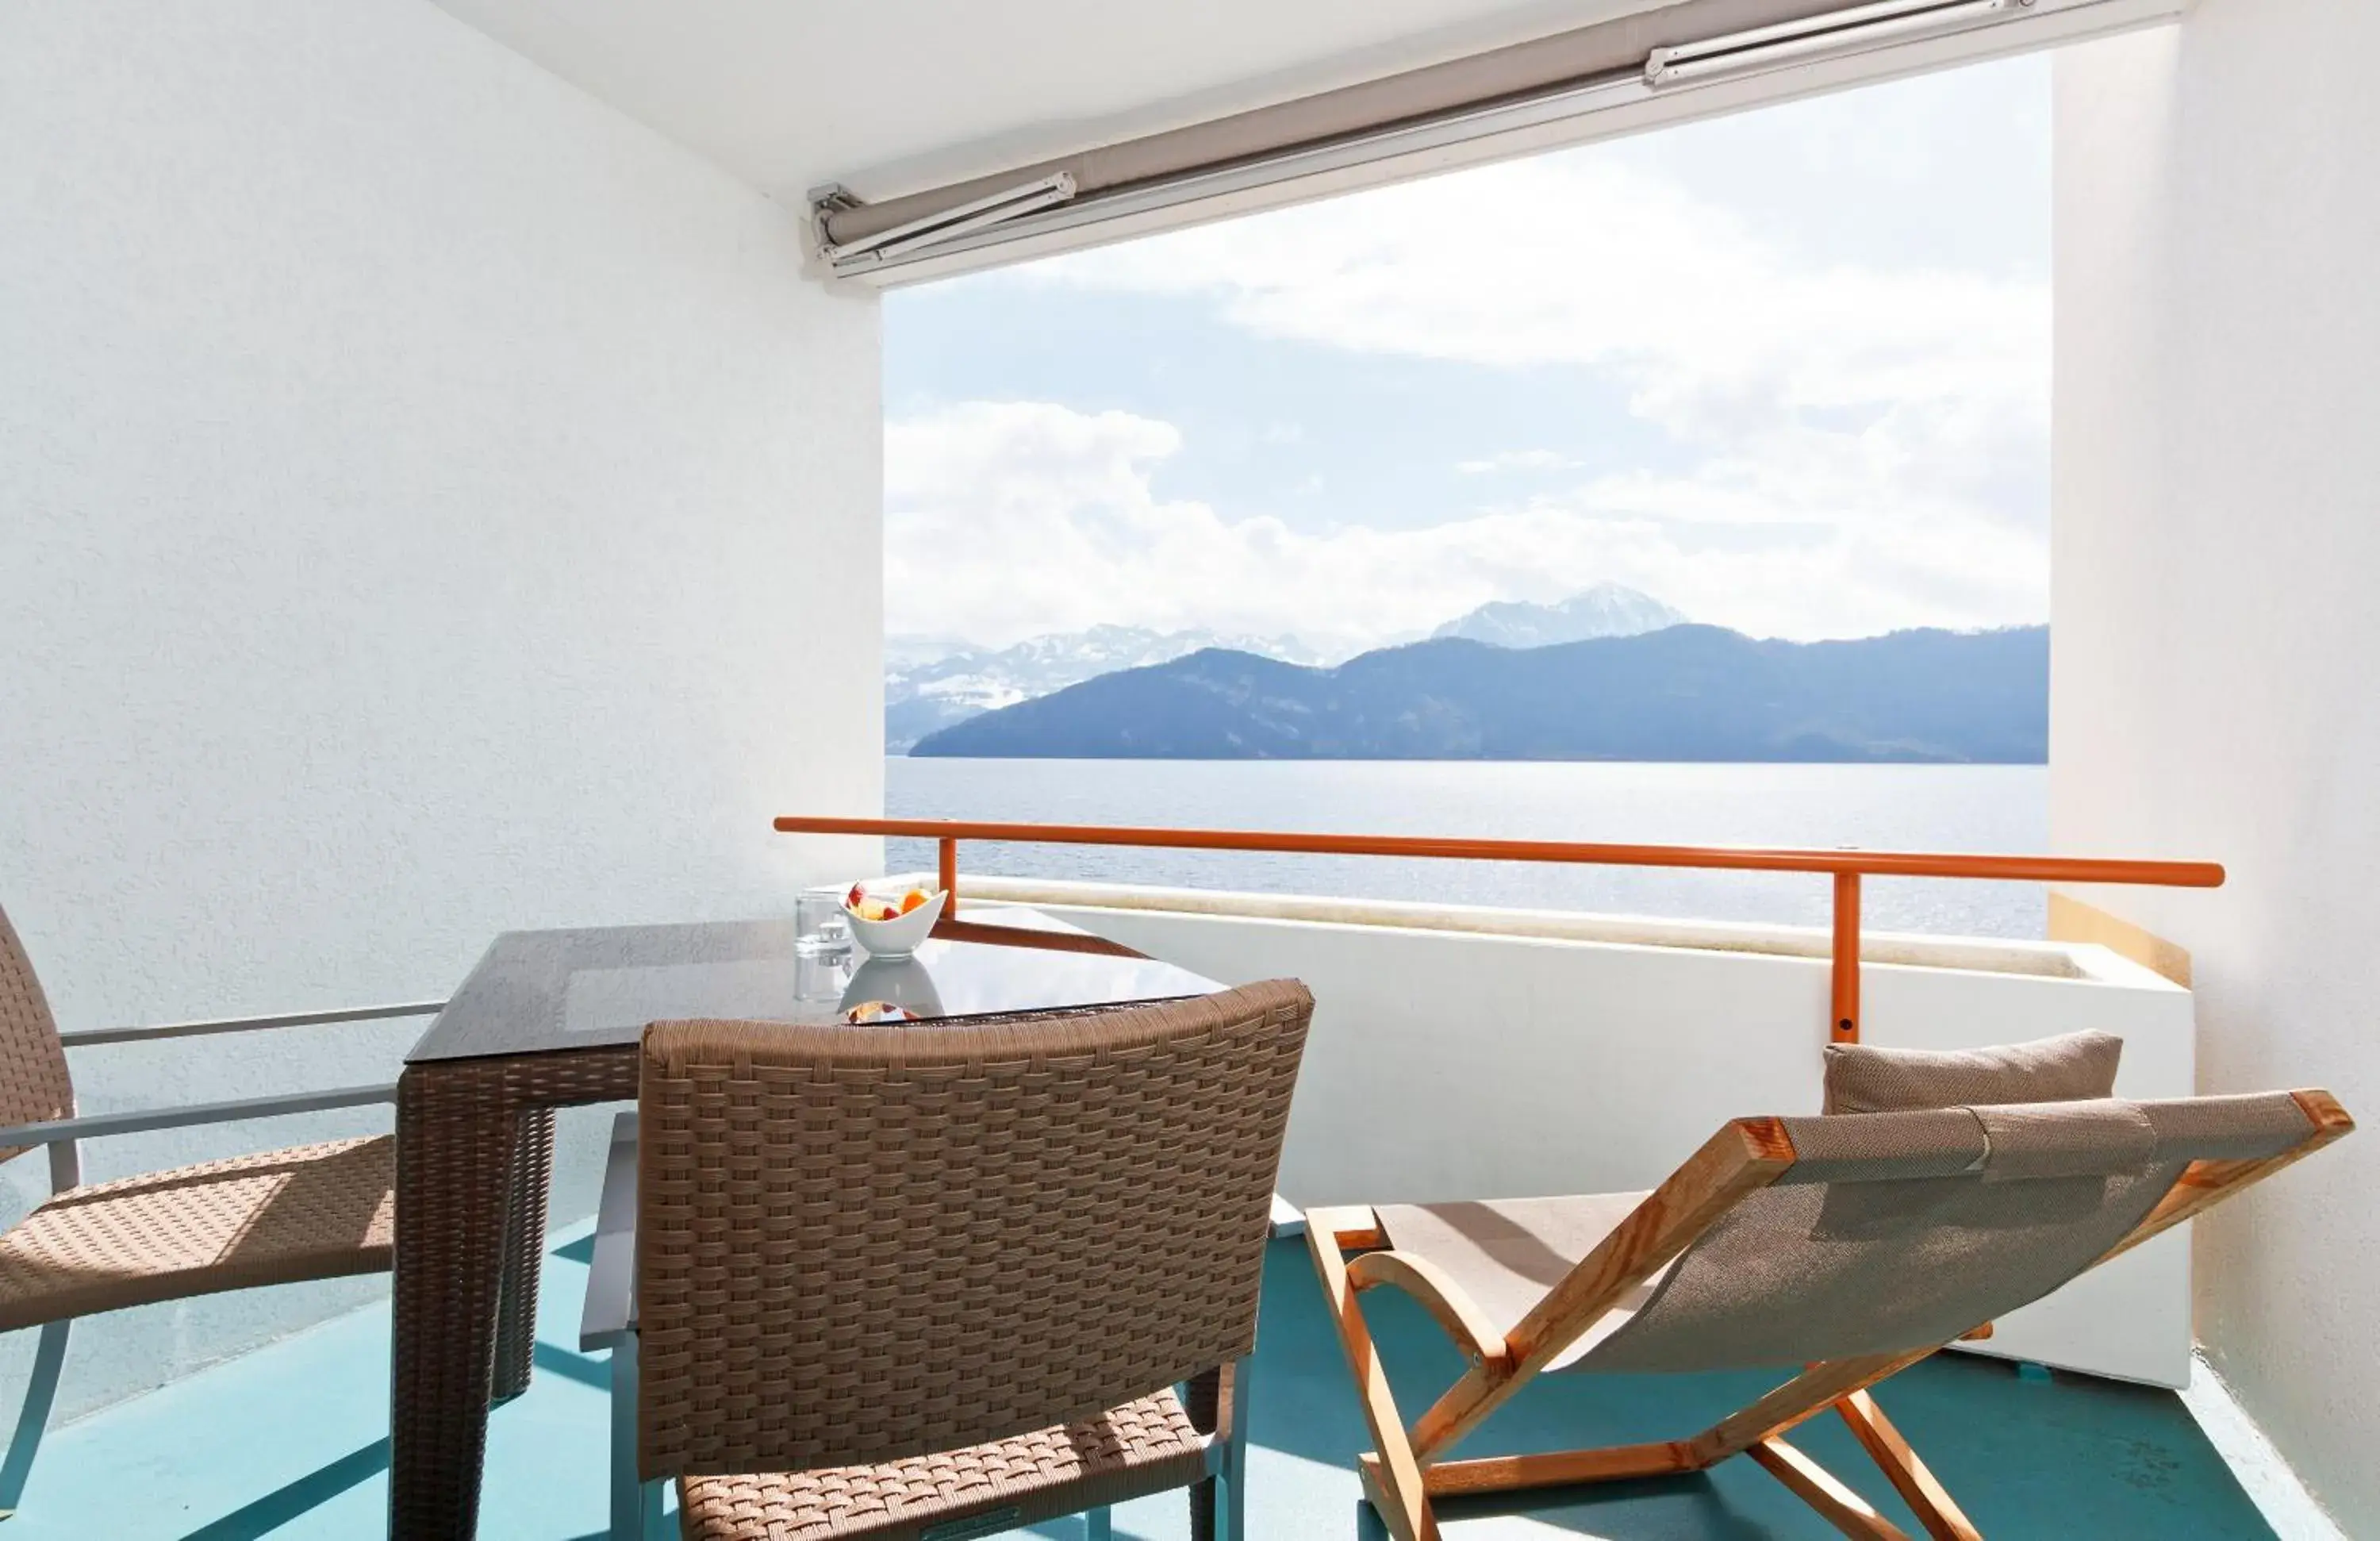 Balcony/Terrace, Mountain View in Post Hotel Weggis